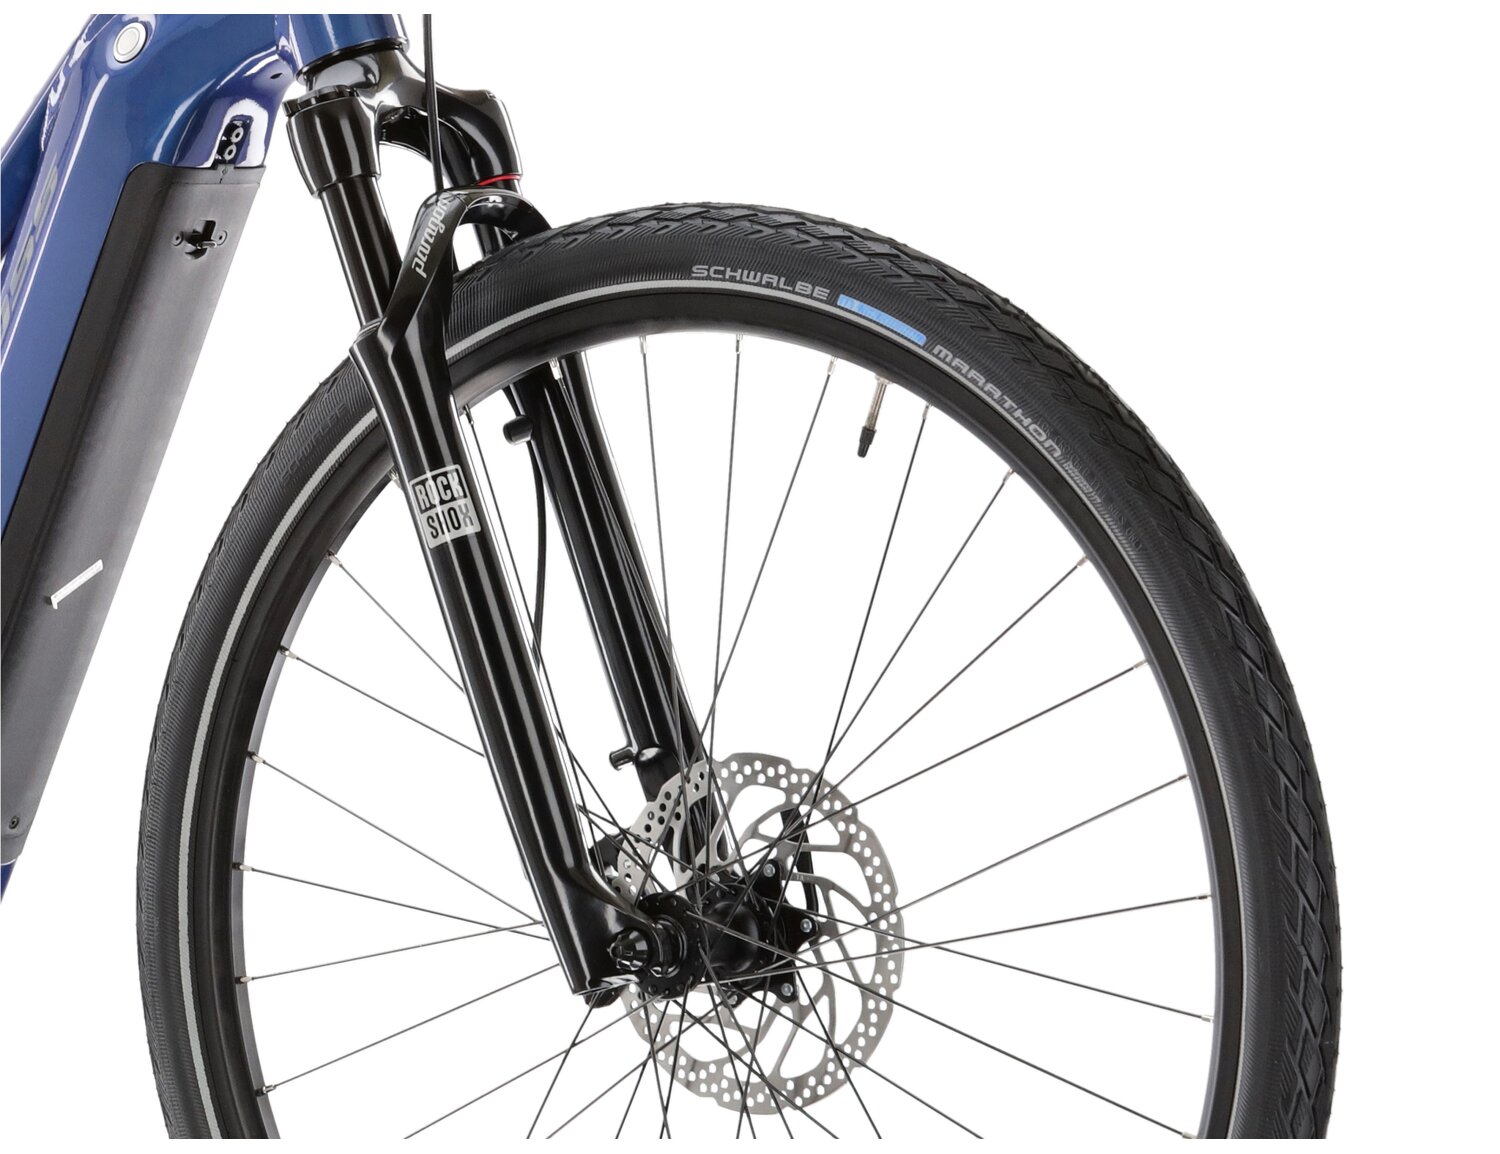 Aluminowa rama, amortyzowany widelec Rock Shox o skoku 65 mm oraz opony w elektrycznym rowerze crossowym KROSS Evado Hybrid 6.0 630 Wh UNI